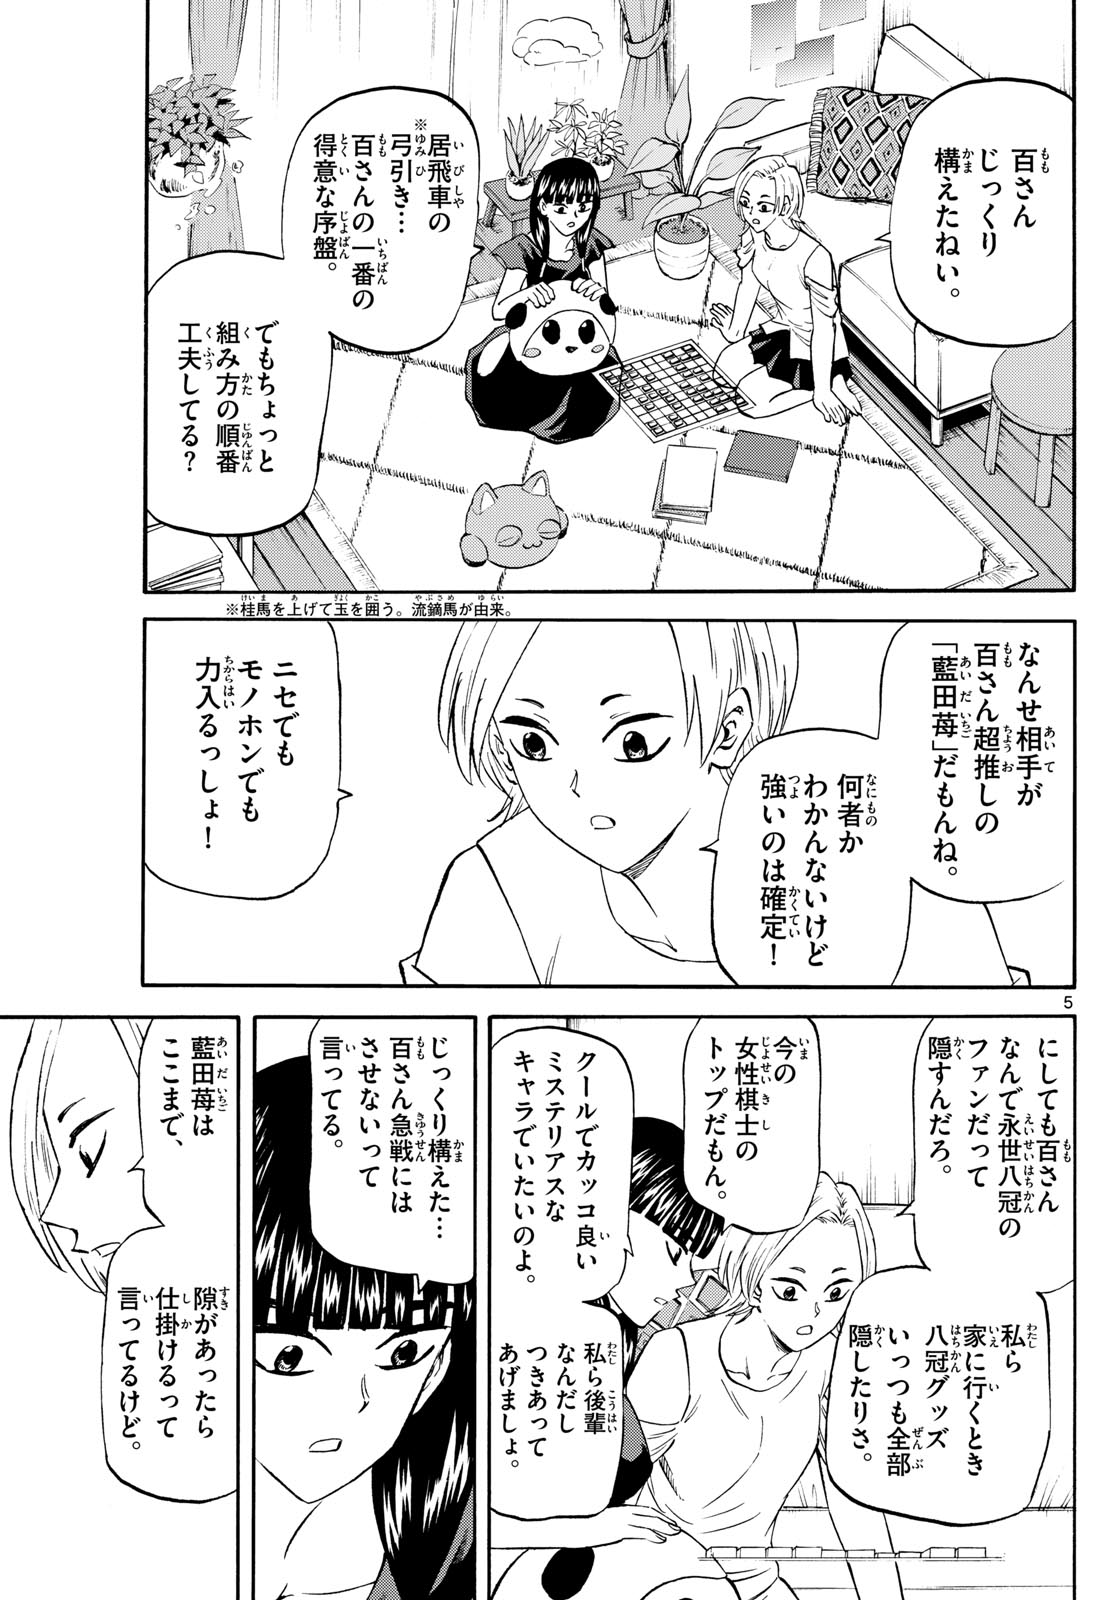 Tatsu to Ichigo - Chapter 200 - Page 5